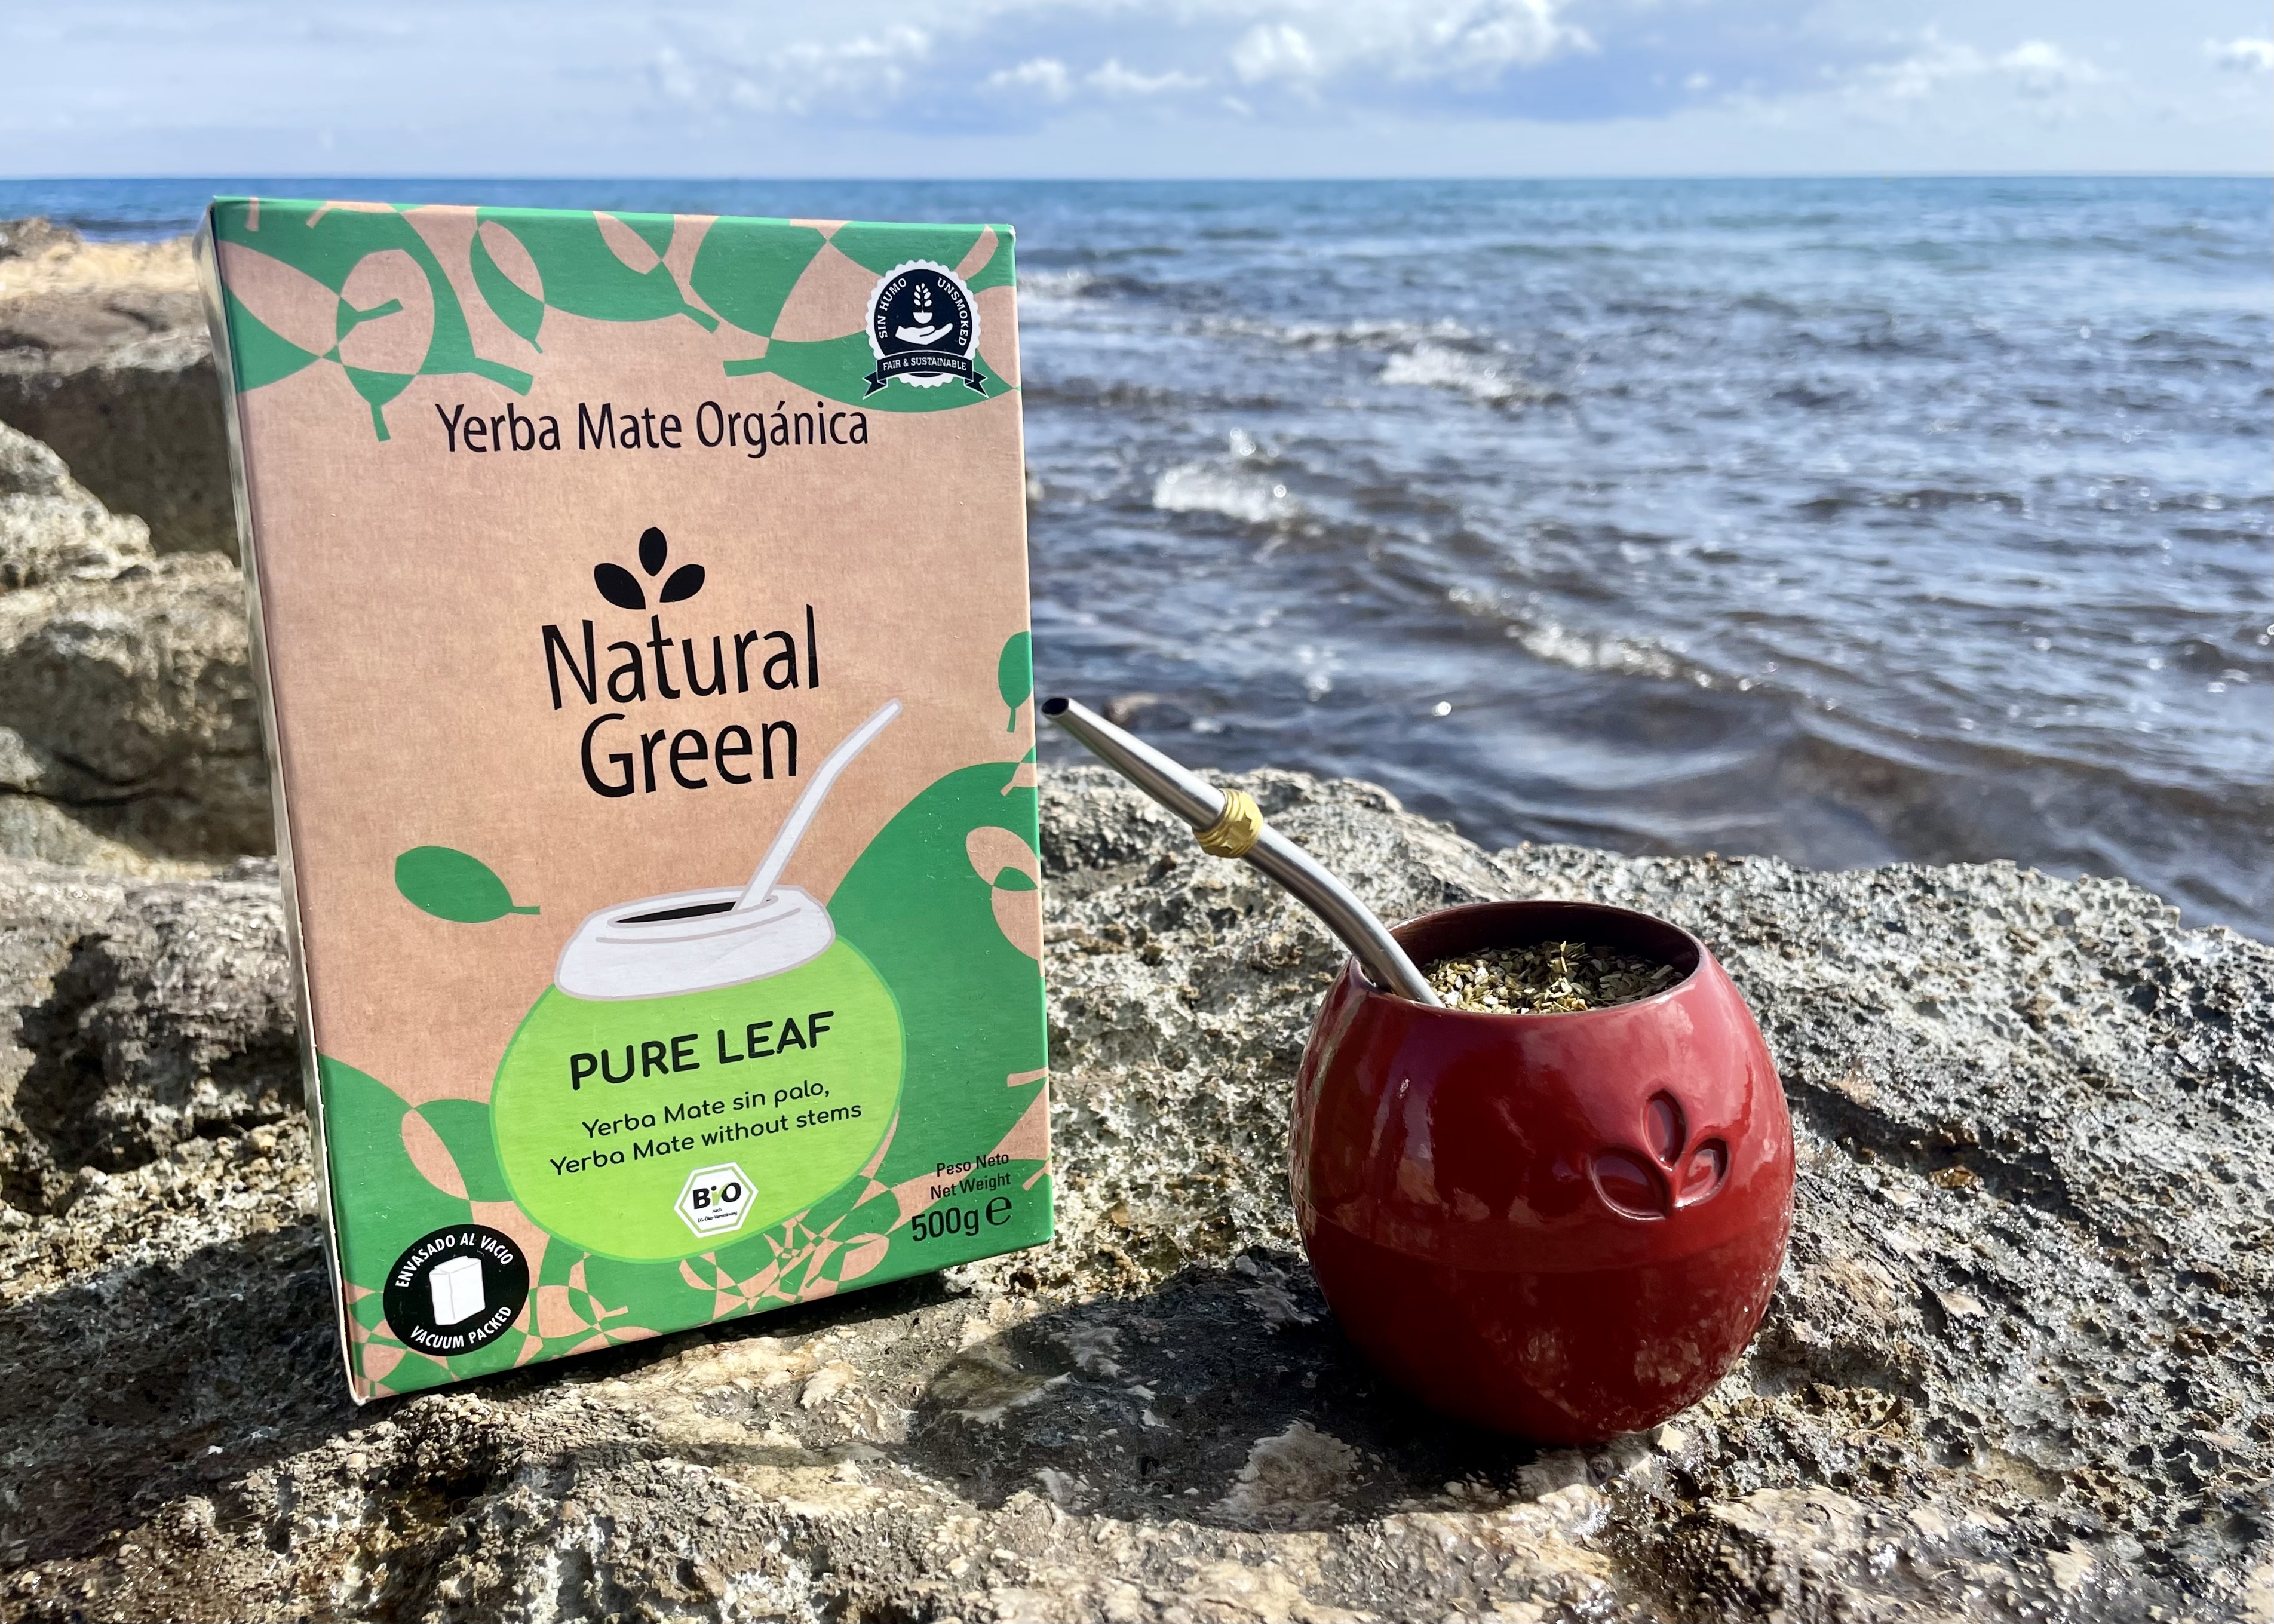 Eine Packung Natural Green Yerba Mate und ein roter Mate Becher auf einem Stein am Meer.